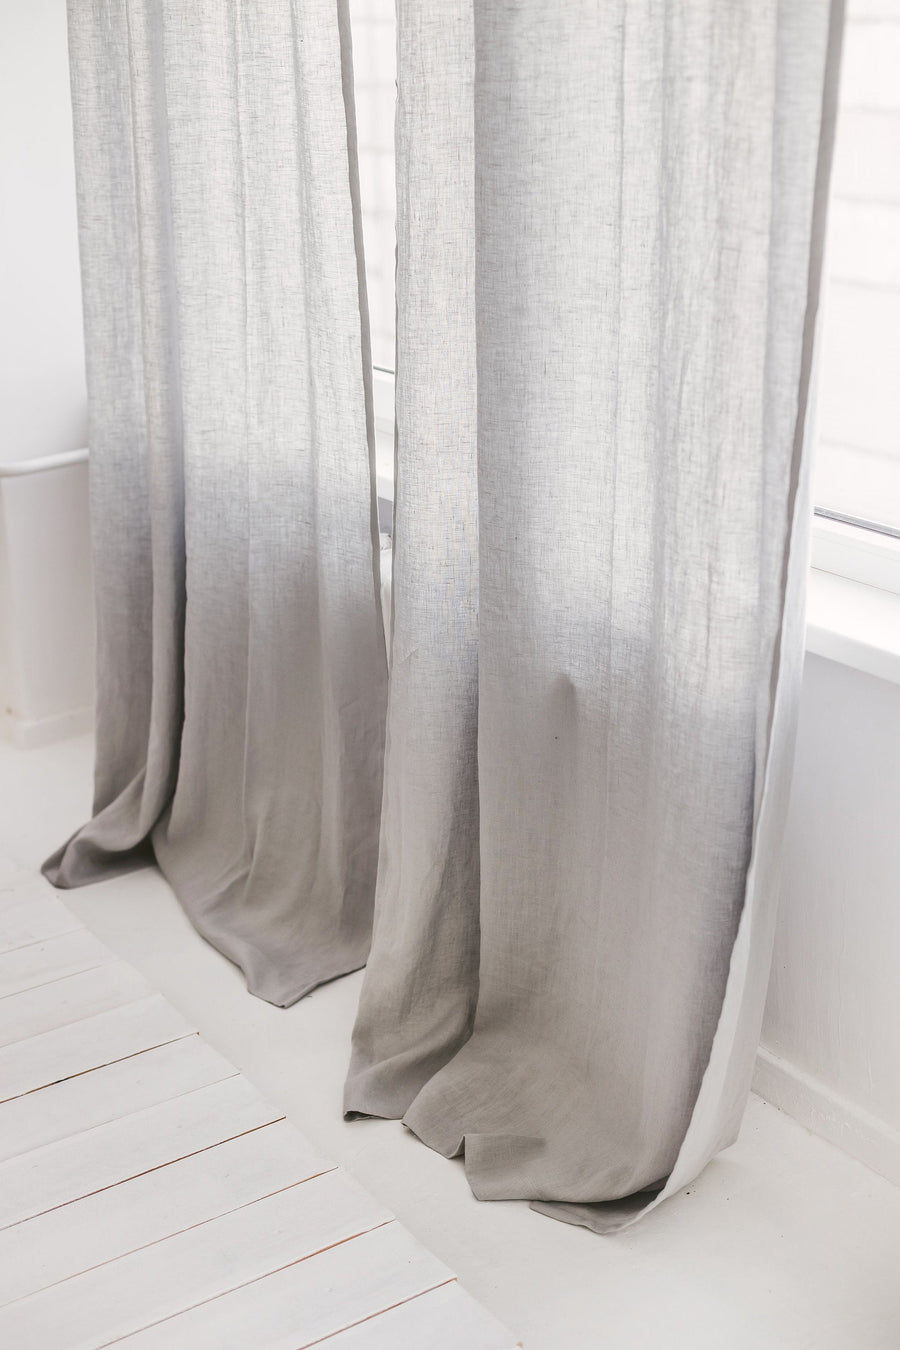 Cloud Gray Linen Curtain